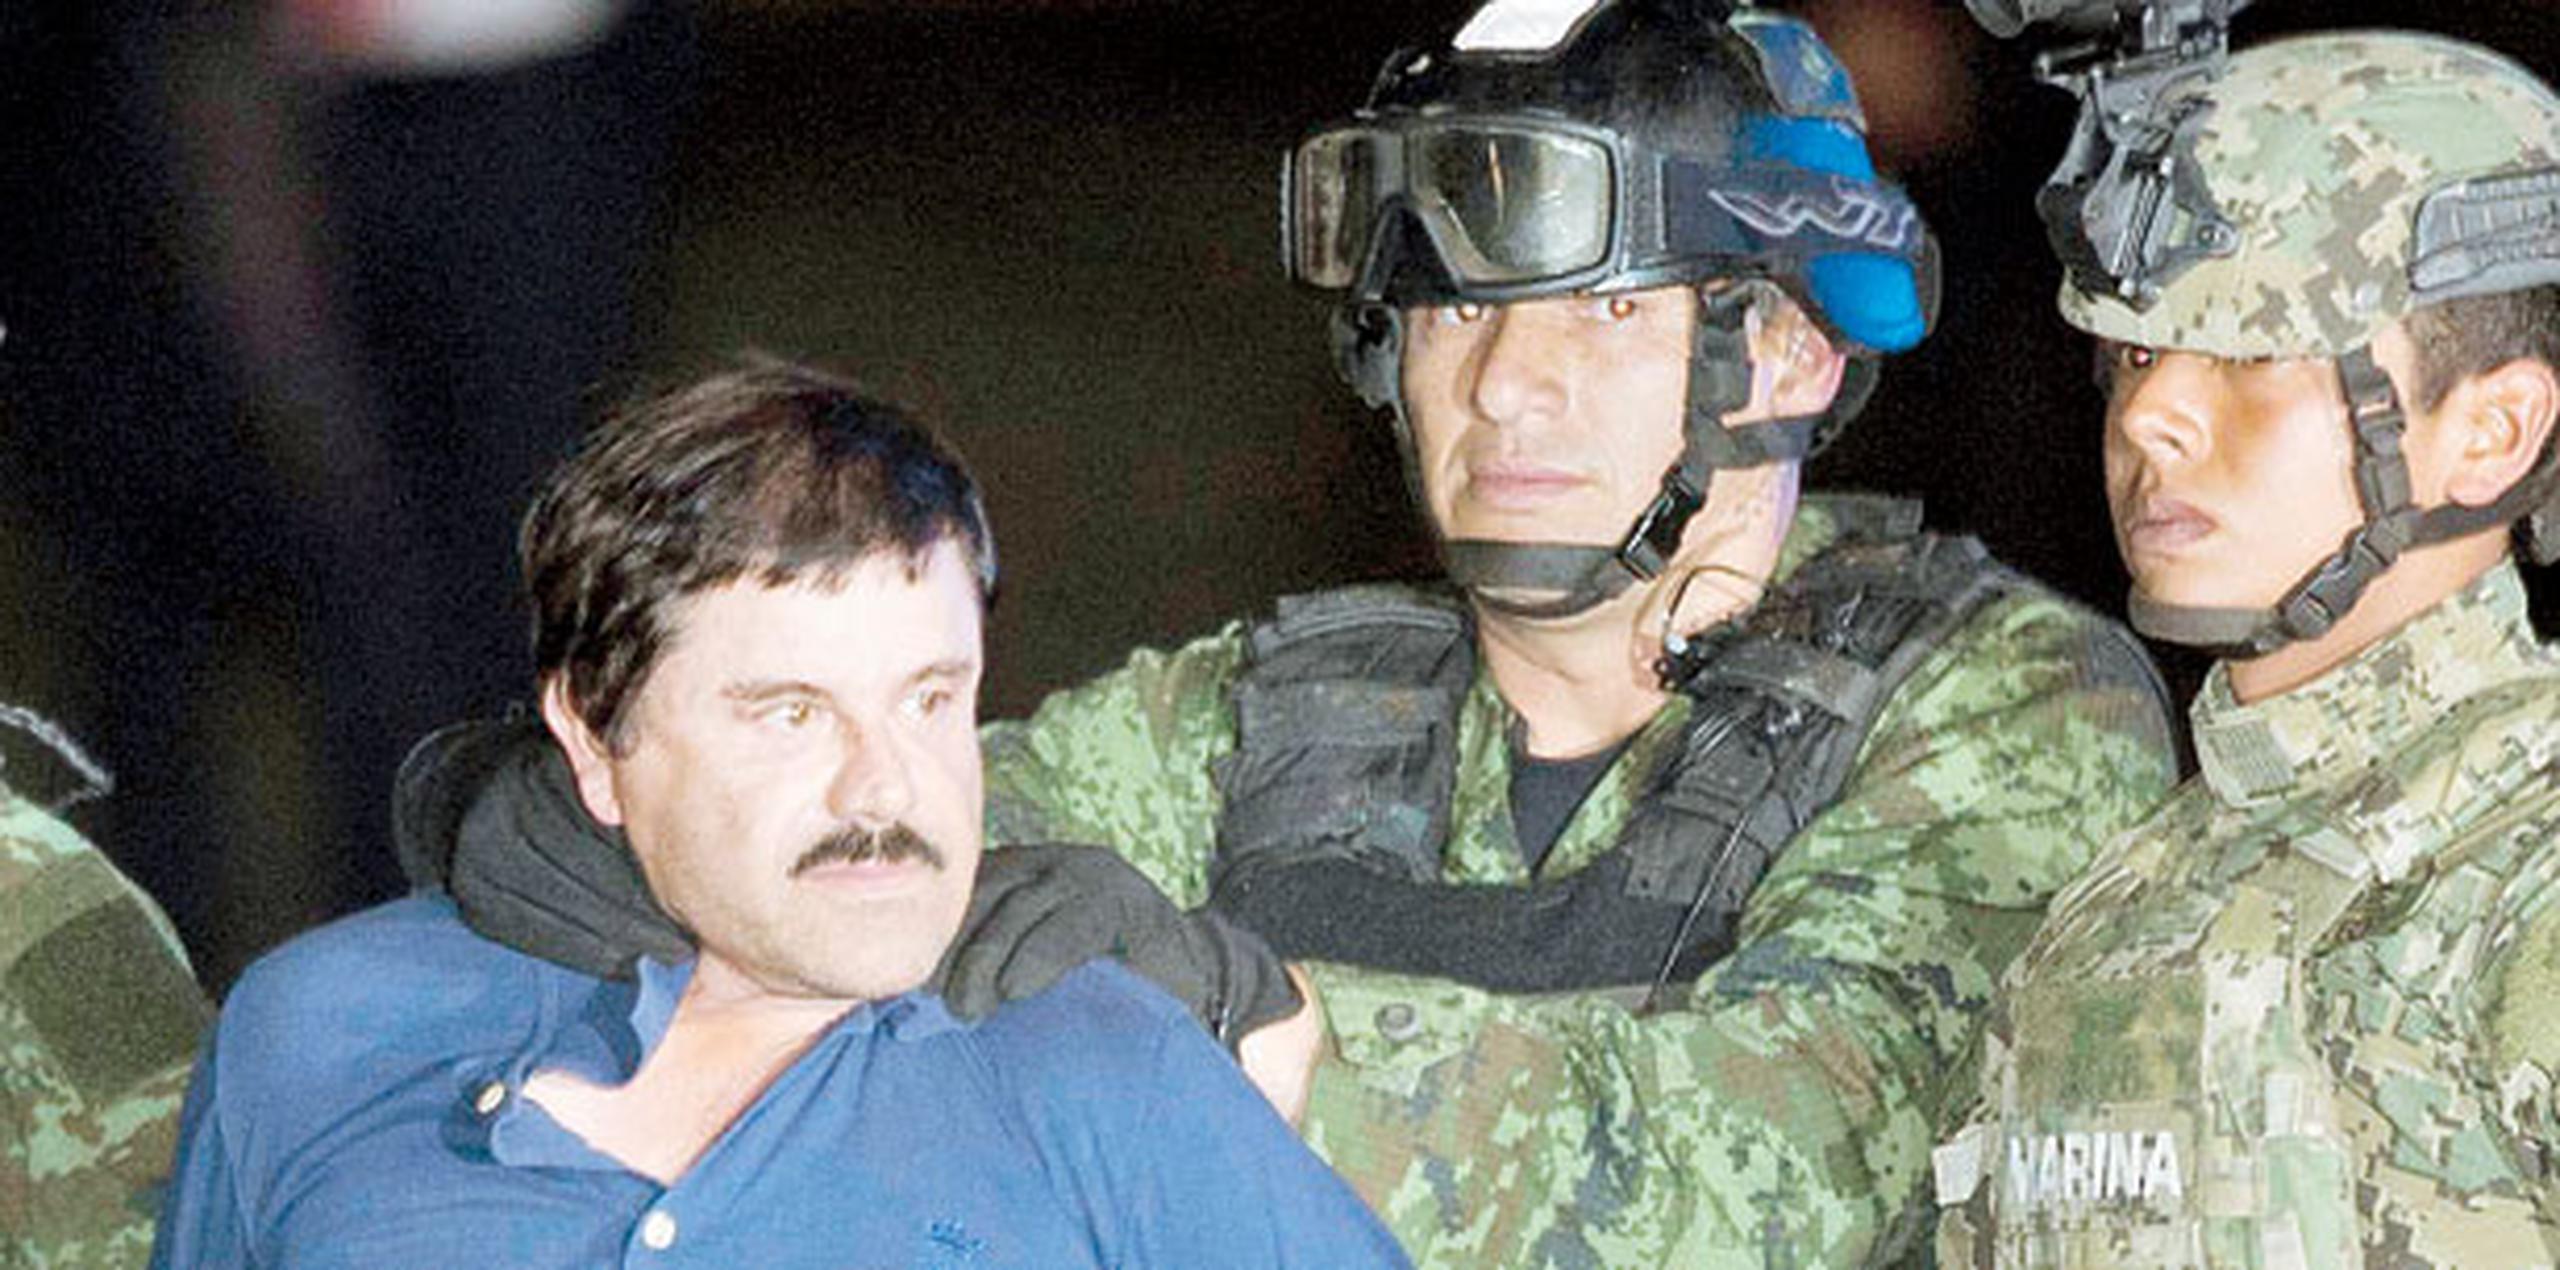 El Chapo fue recluido el 8 de enero en la prisión del Altiplano, en el central Estado de México, luego de ser recapturado en su estado natal de Sinaloa, seis meses después de que se fugara de ese penal a través de un túnel de 1.5 kilómetros. (Archivo)